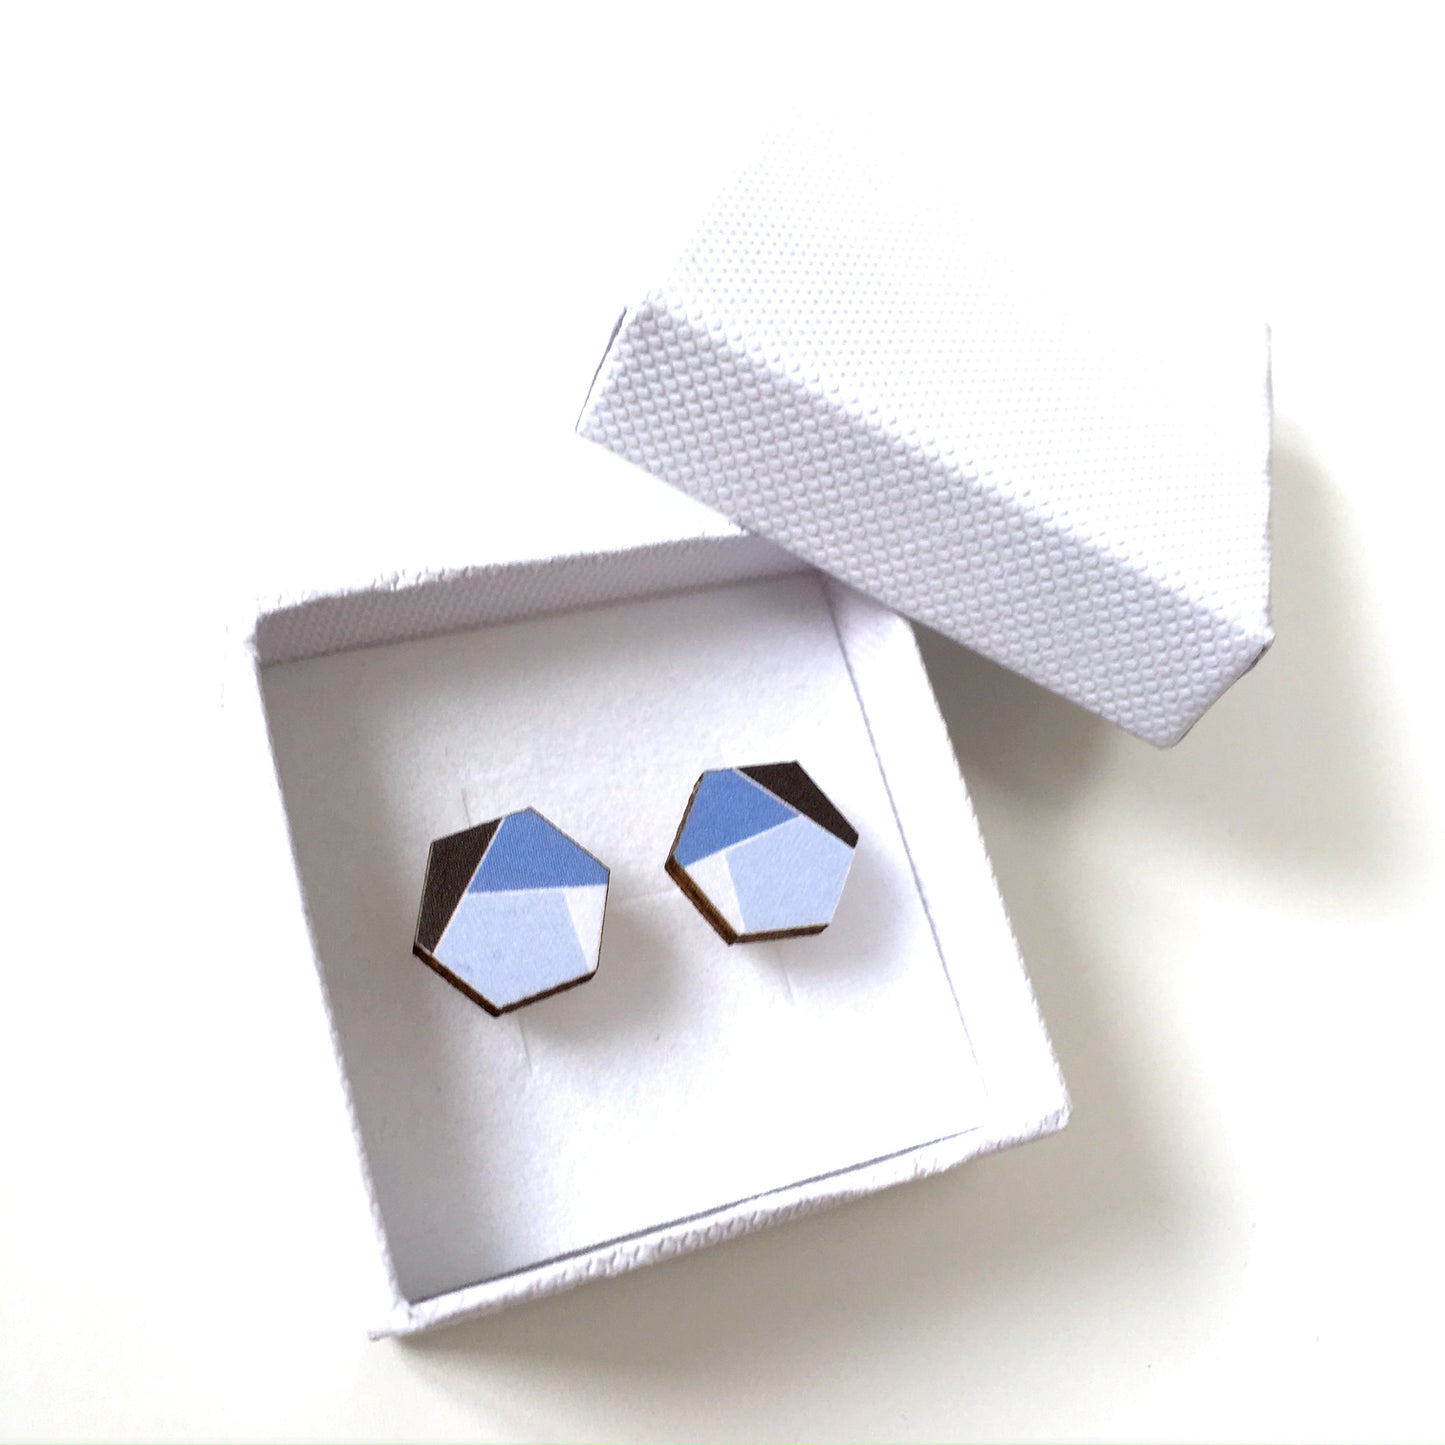 Blue hexagon wooden stud earrings - geometric jewellery